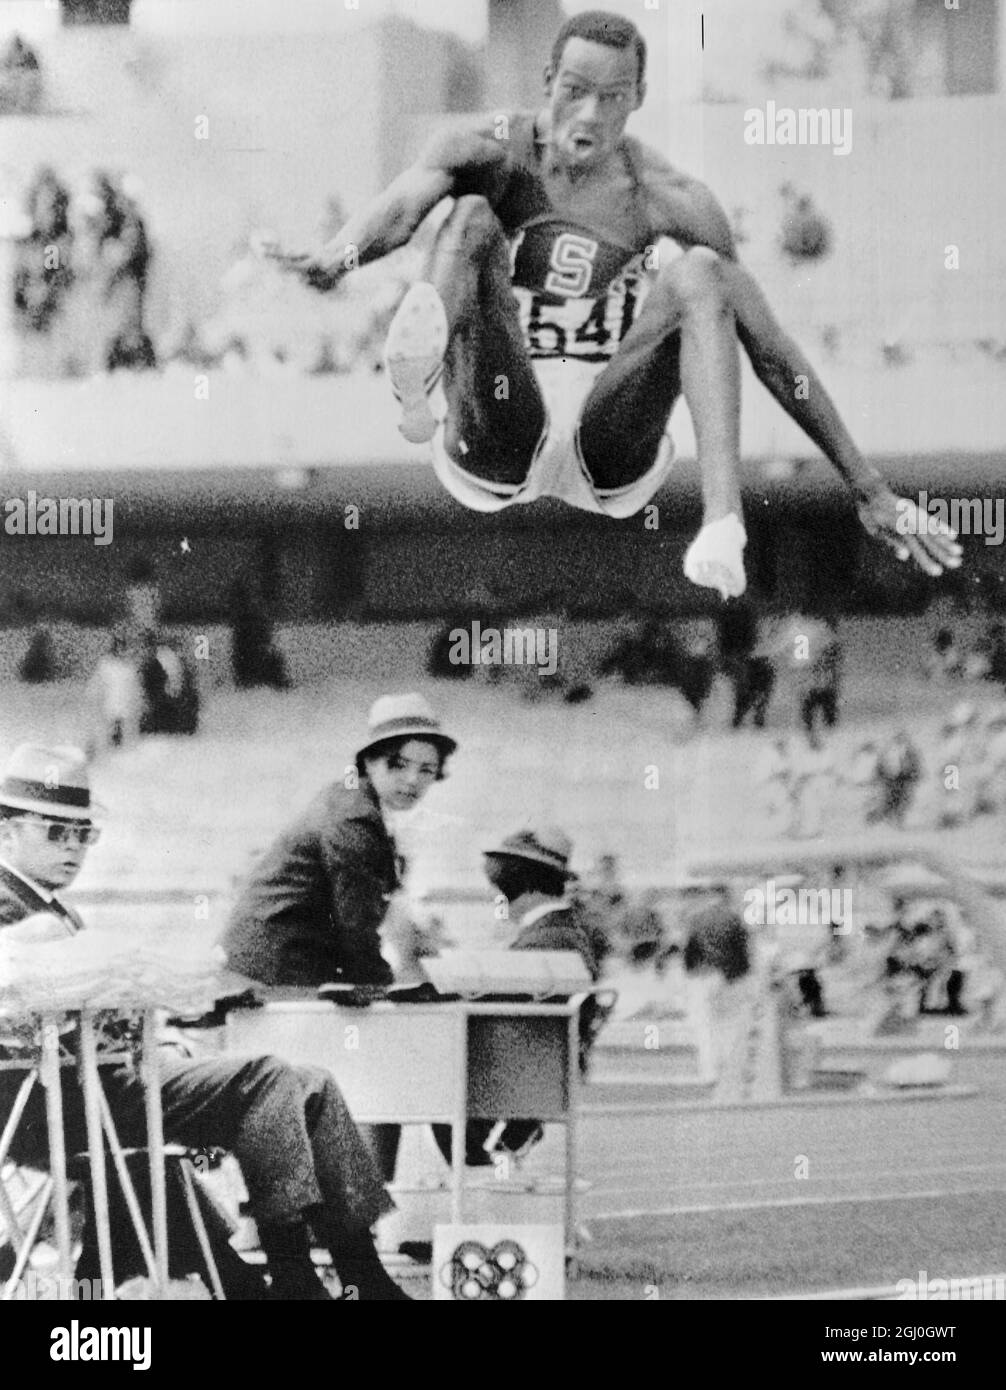 Bob Beamon von el Paso Texas USA in einem gewaltigen Sprung, der den alten  Weltrekord bei den Herren-Weitsprung um mehr als zwei Meter Sprünge um 29  Fuß 2 halbe Zoll überholte, um